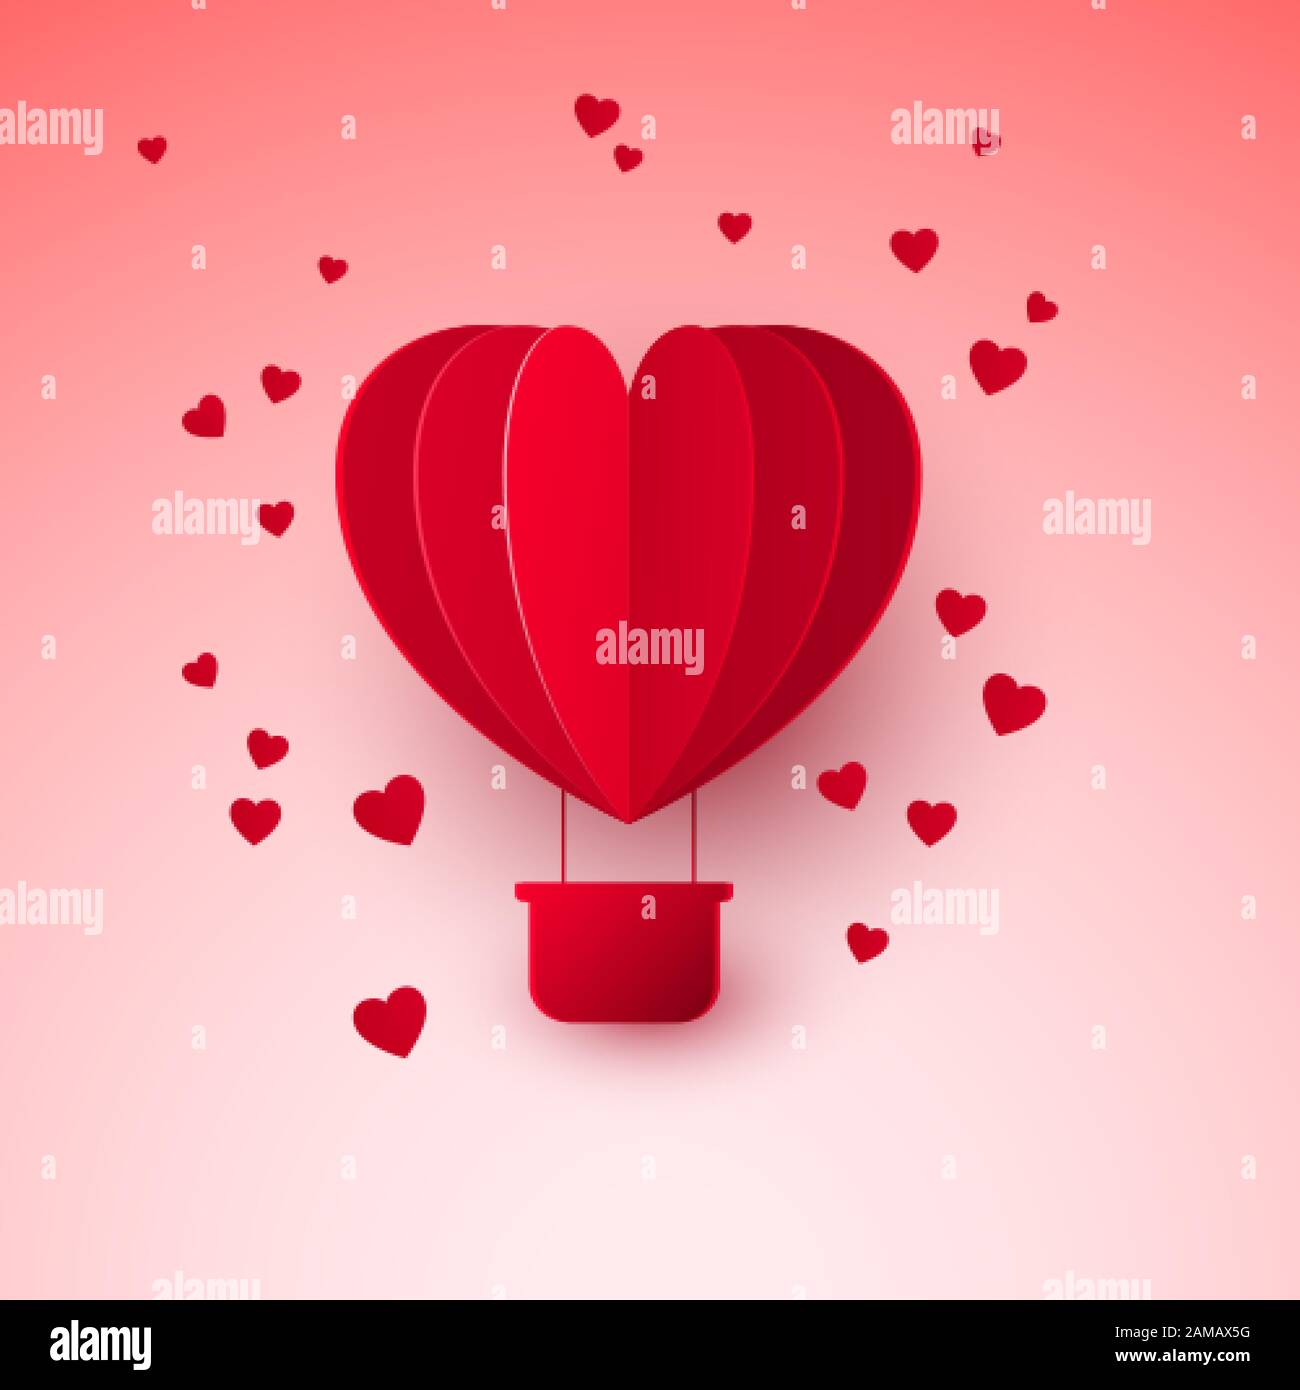 Valentinstag mit Papier geschnitten roter, herzförmiger Luftballon. Ballon fliegt und hinterlässt eine Spur mit Herzen. Vektorgrafiken Stock Vektor